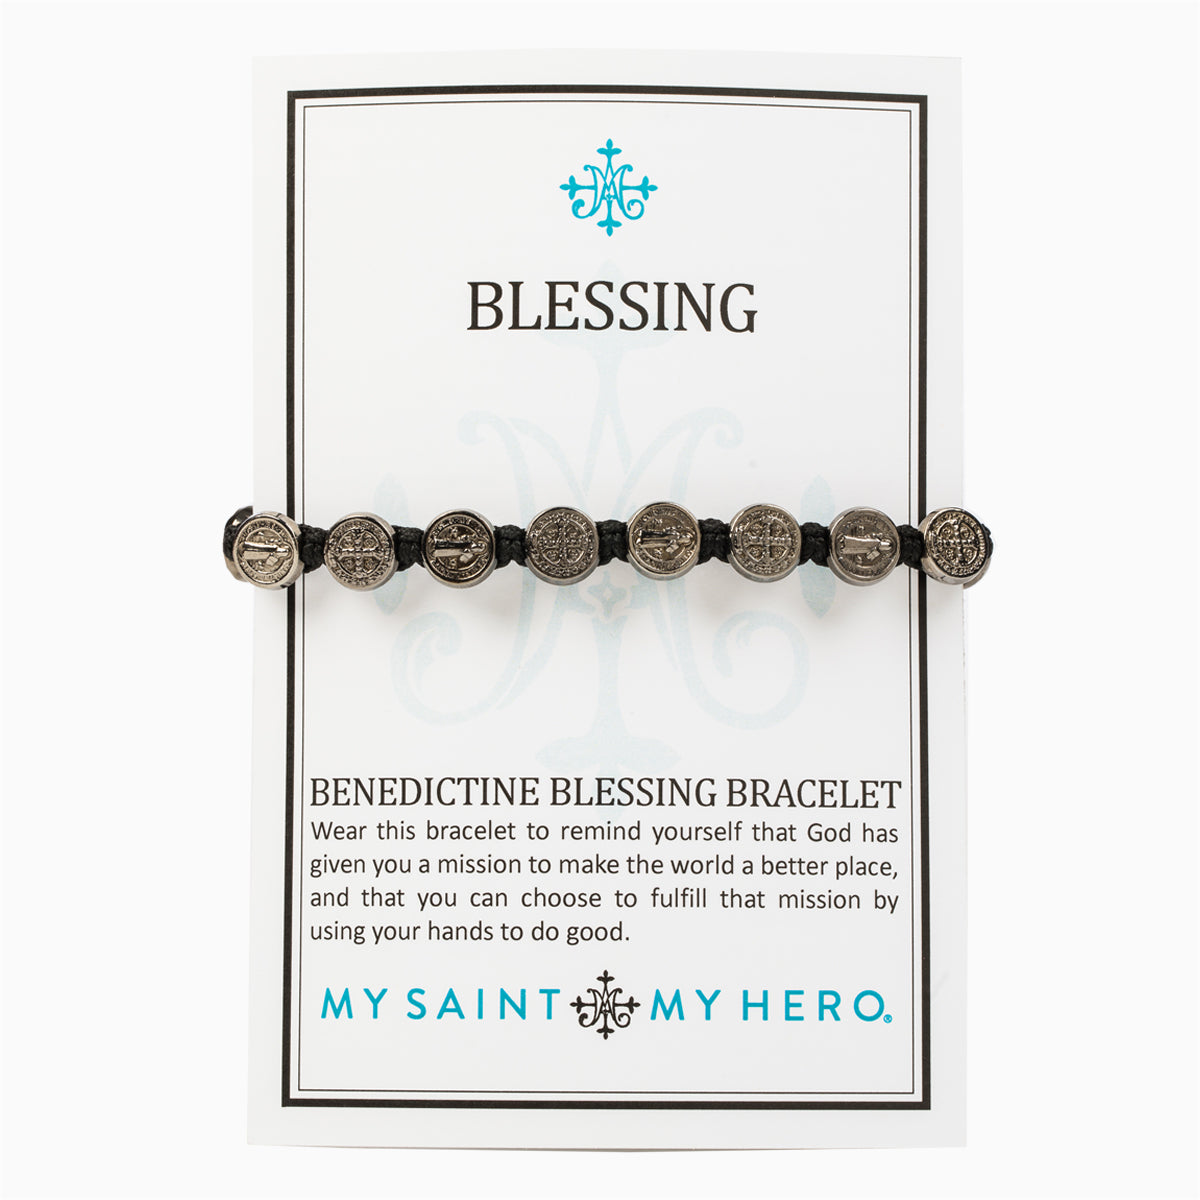 Benedictine Blessing Bracelet - Jet Black Medals